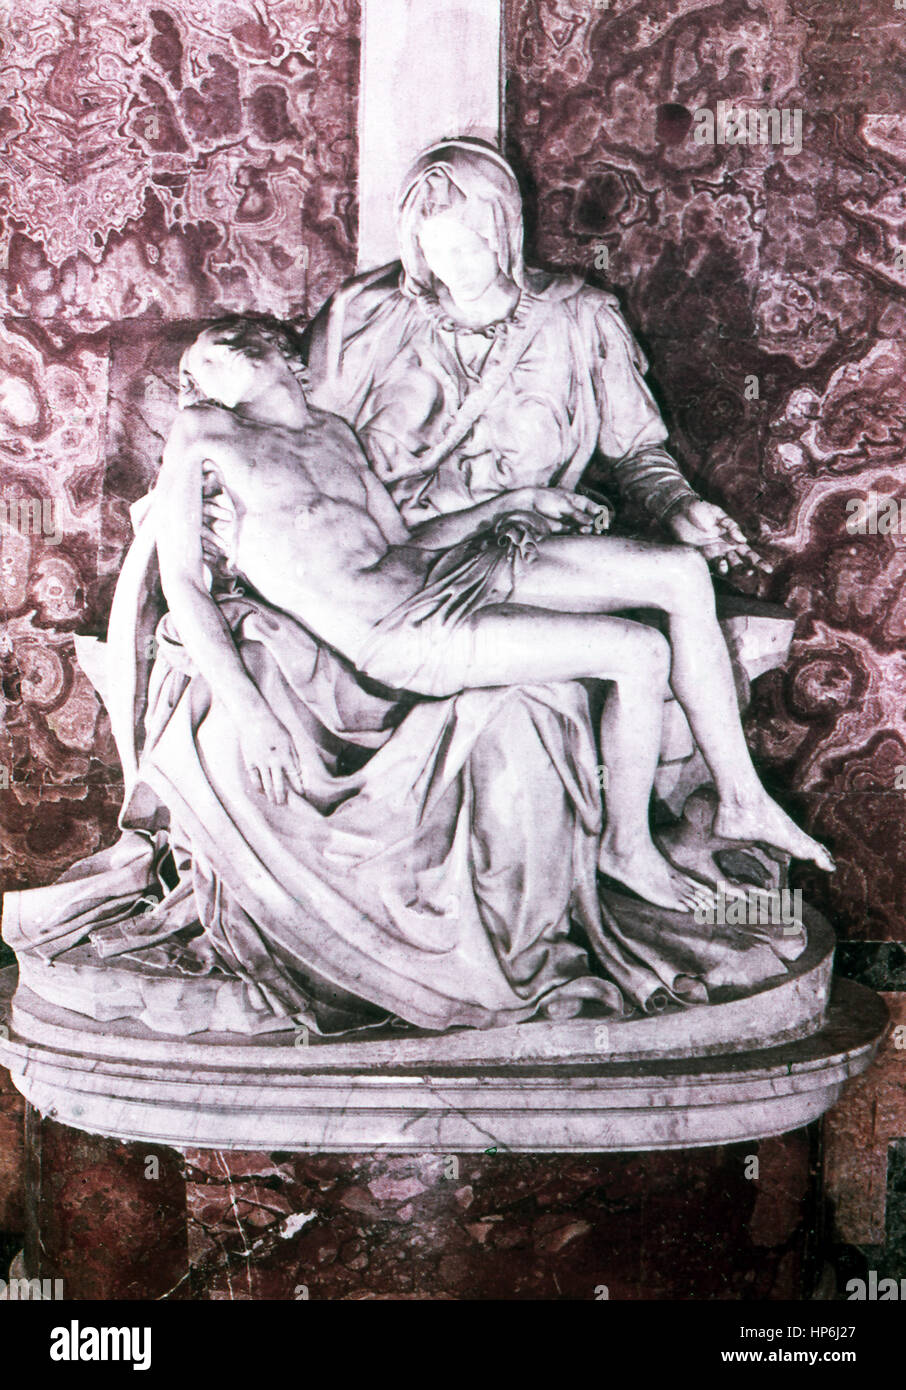 Diese Skulptur des italienischen Bildhauers Malers Michelangelo (1475-1564) trägt den Titel Pieta. Der italienische Bildhauer, Maler und Architekt geschnitzt Michelangelo liegt in den Armen seiner Mutter Maria kurz nach der Kreuzigung Christi. Eines seiner beiden bekanntesten Werke (die andere ist David), wurde im Jahr 1499 fertiggestellt. Es ist jetzt im Vatikanischen Museum untergebracht. Das Foto stammt bis 1964. Stockfoto